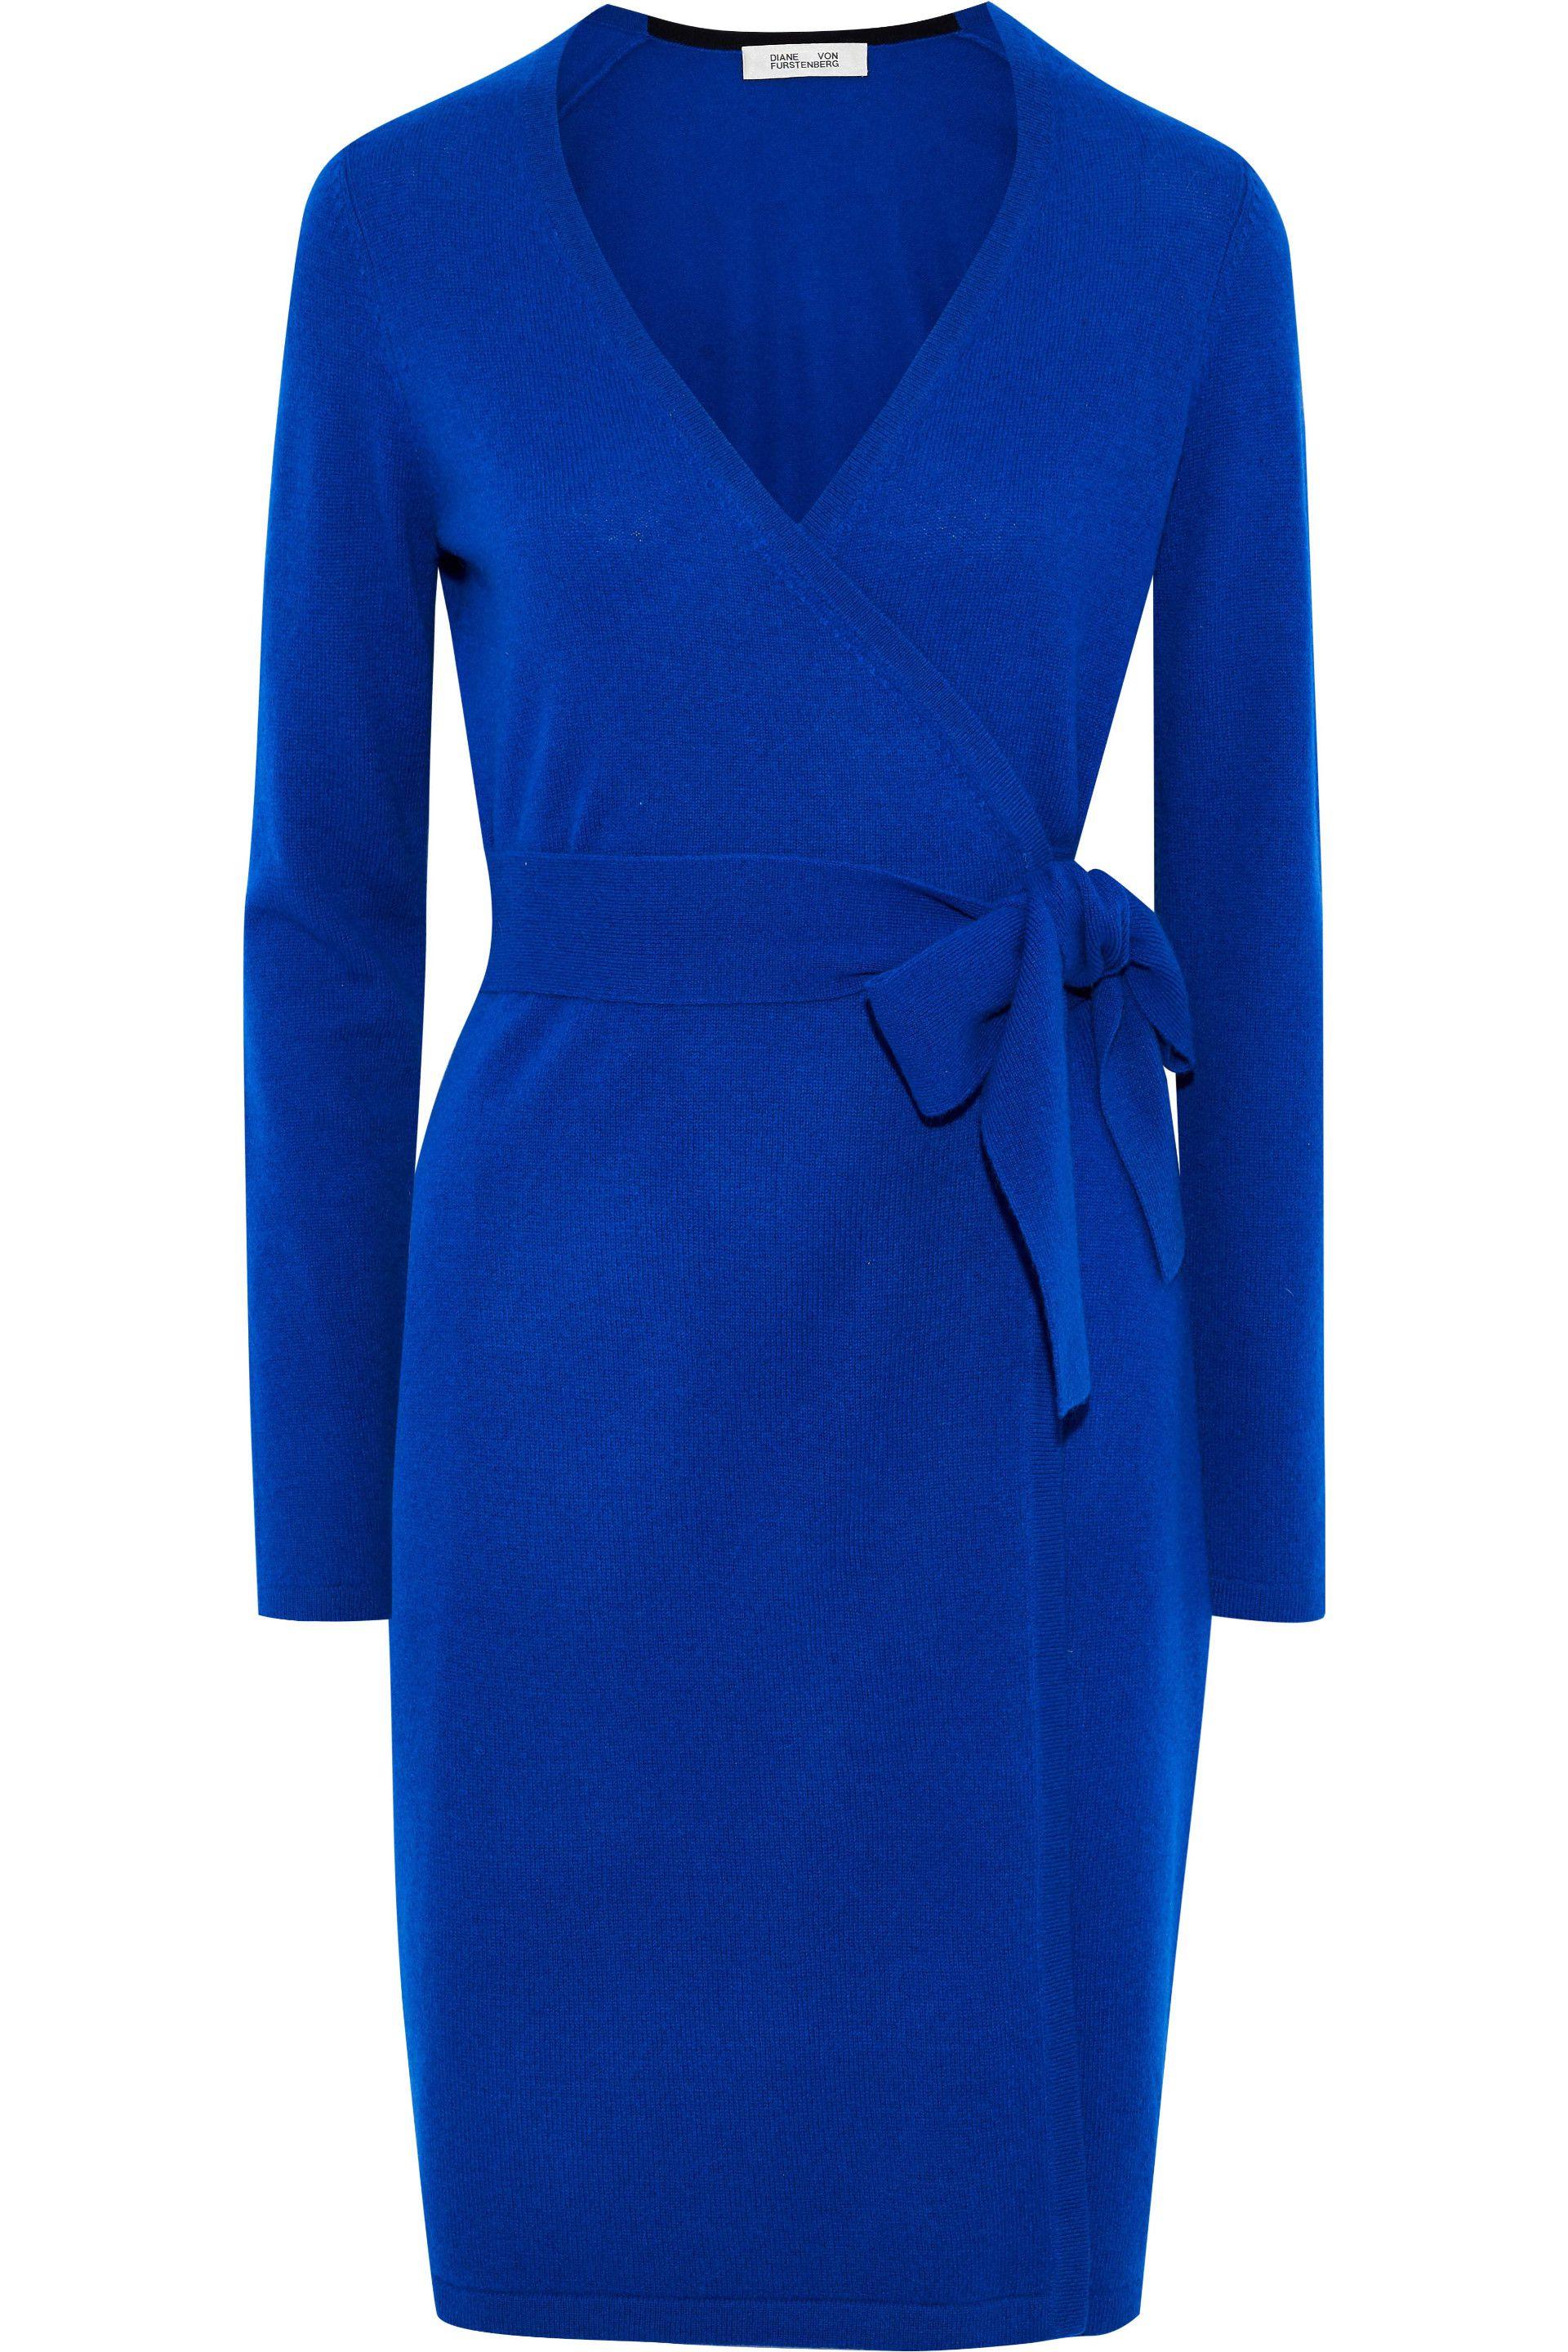 Diane von Furstenberg New Linda Cashmere Wrap Dress Bright Blue | Lyst